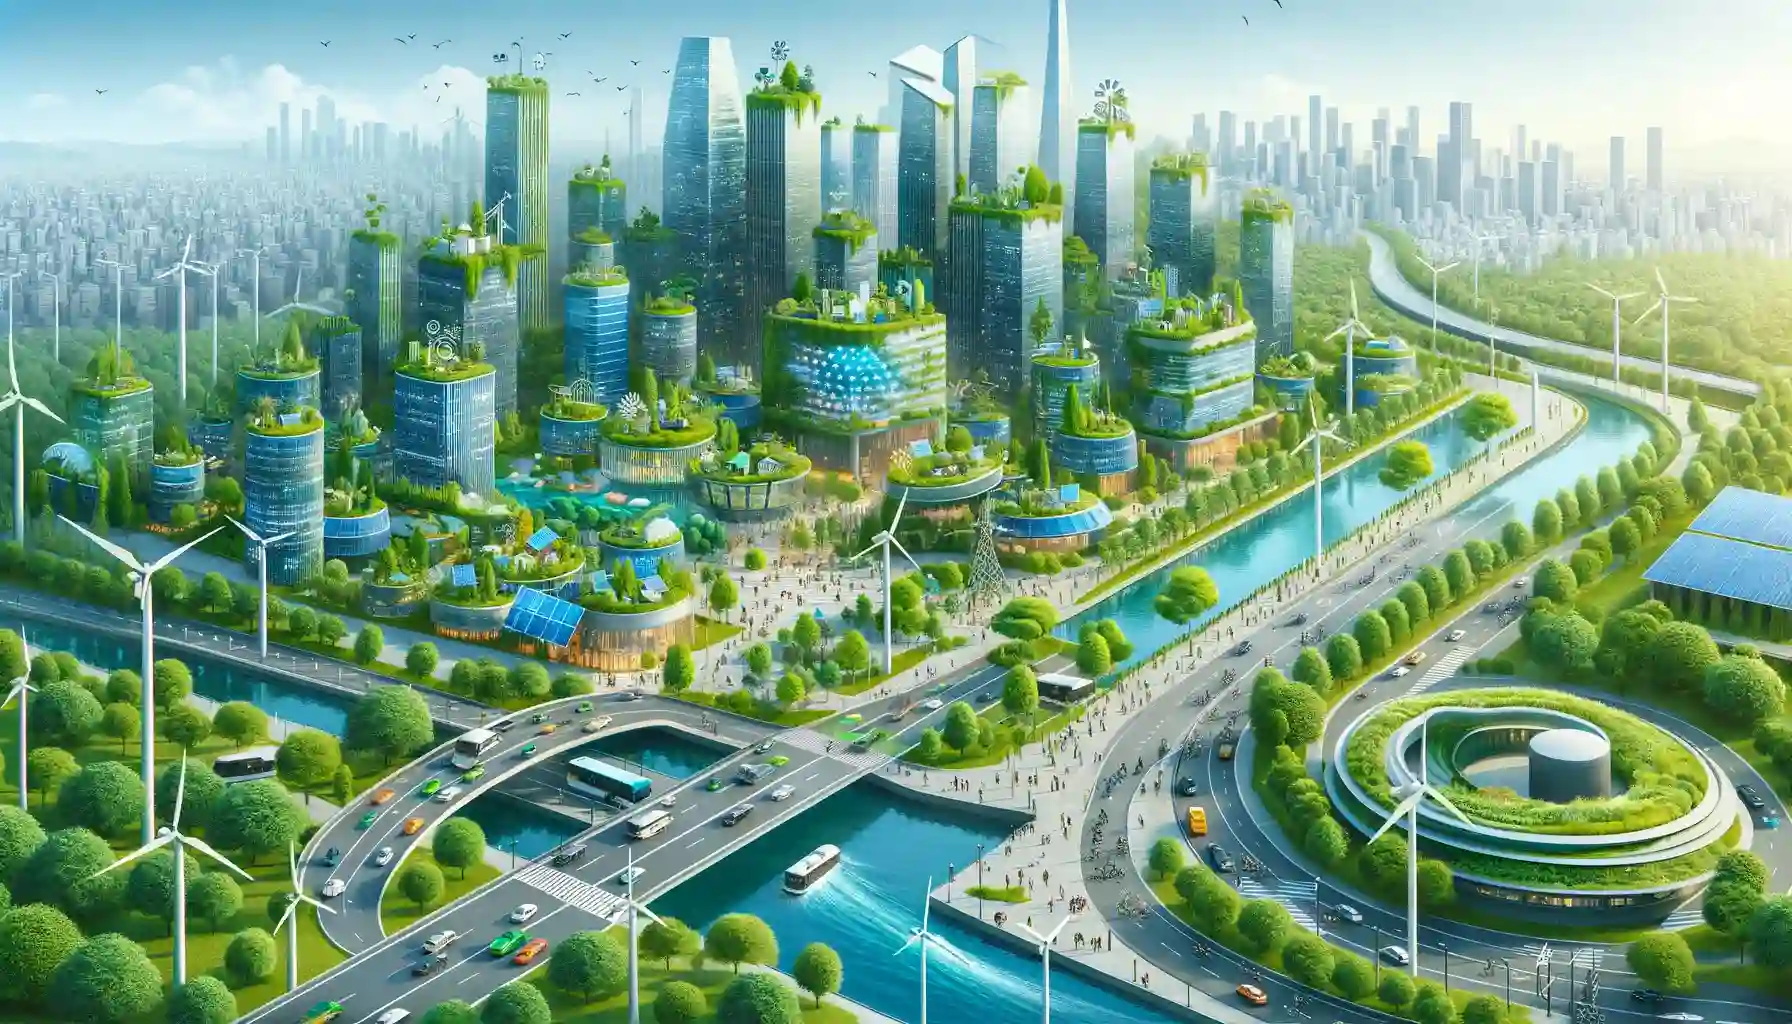 Aménagement durable : comment concilier développement urbain et protection de l’environnement ?